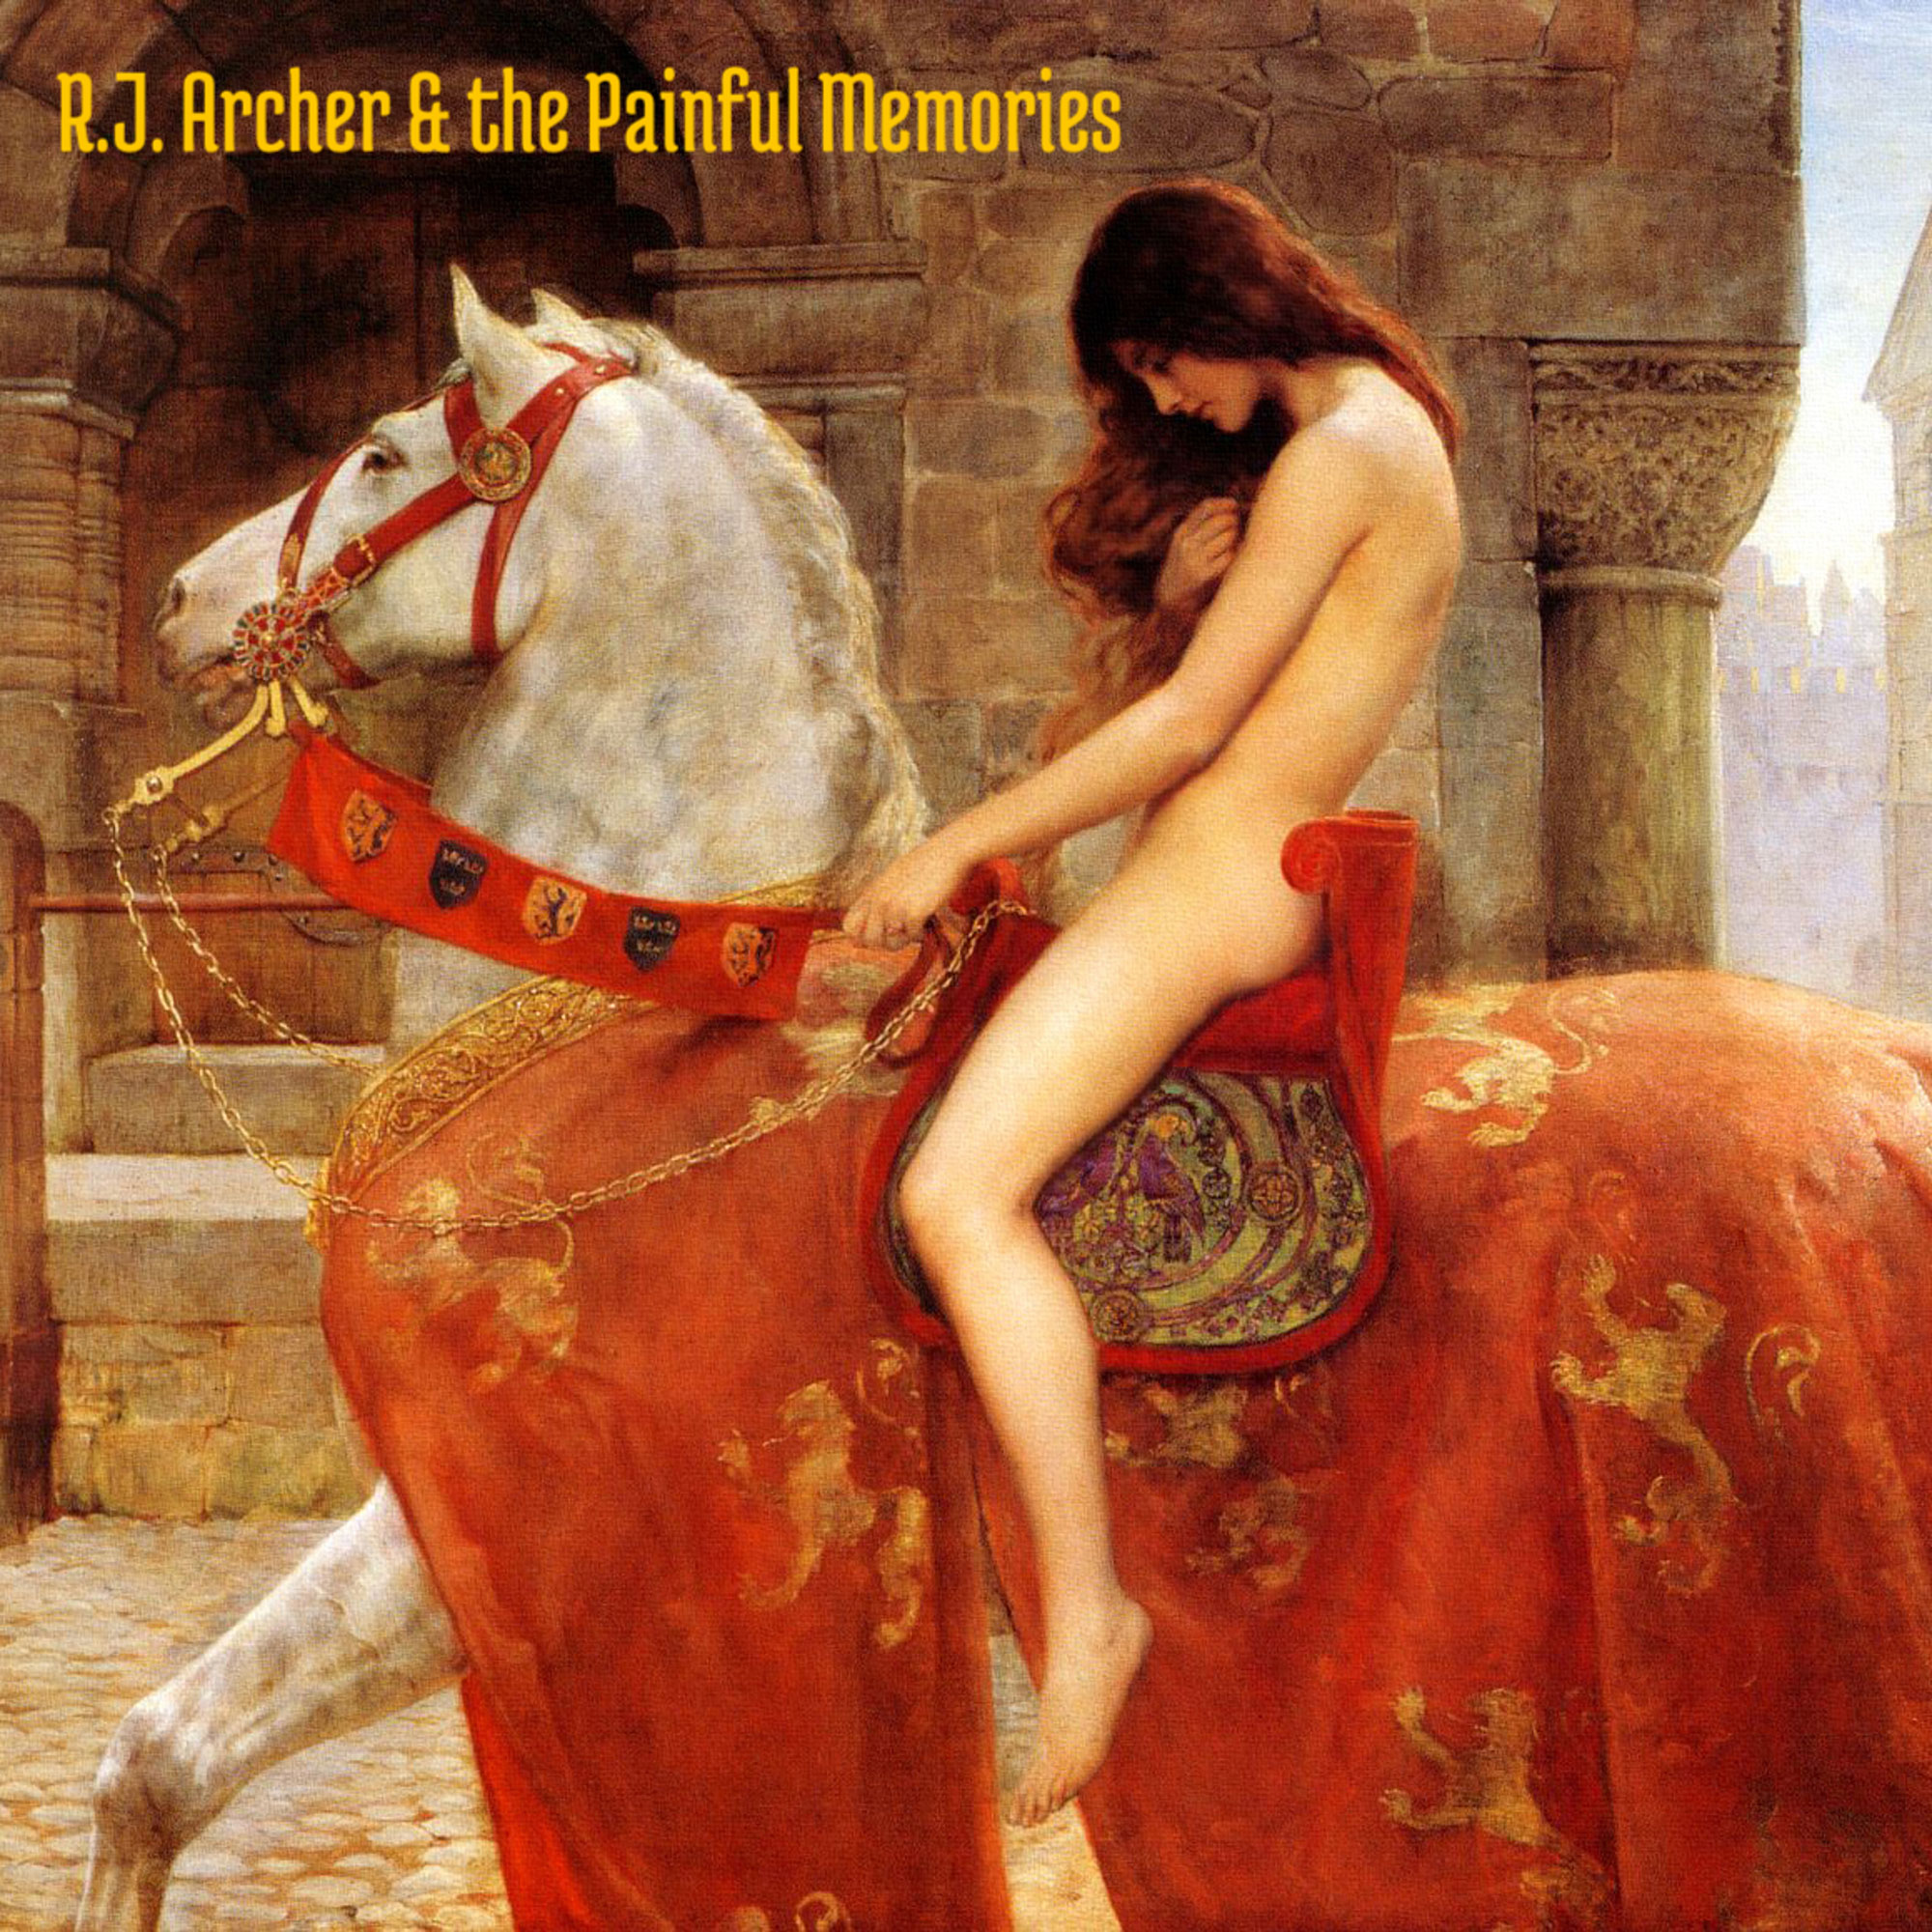  Escucha “Horseplay!”, el segundo álbum de RJ Archer & The Painful Memories